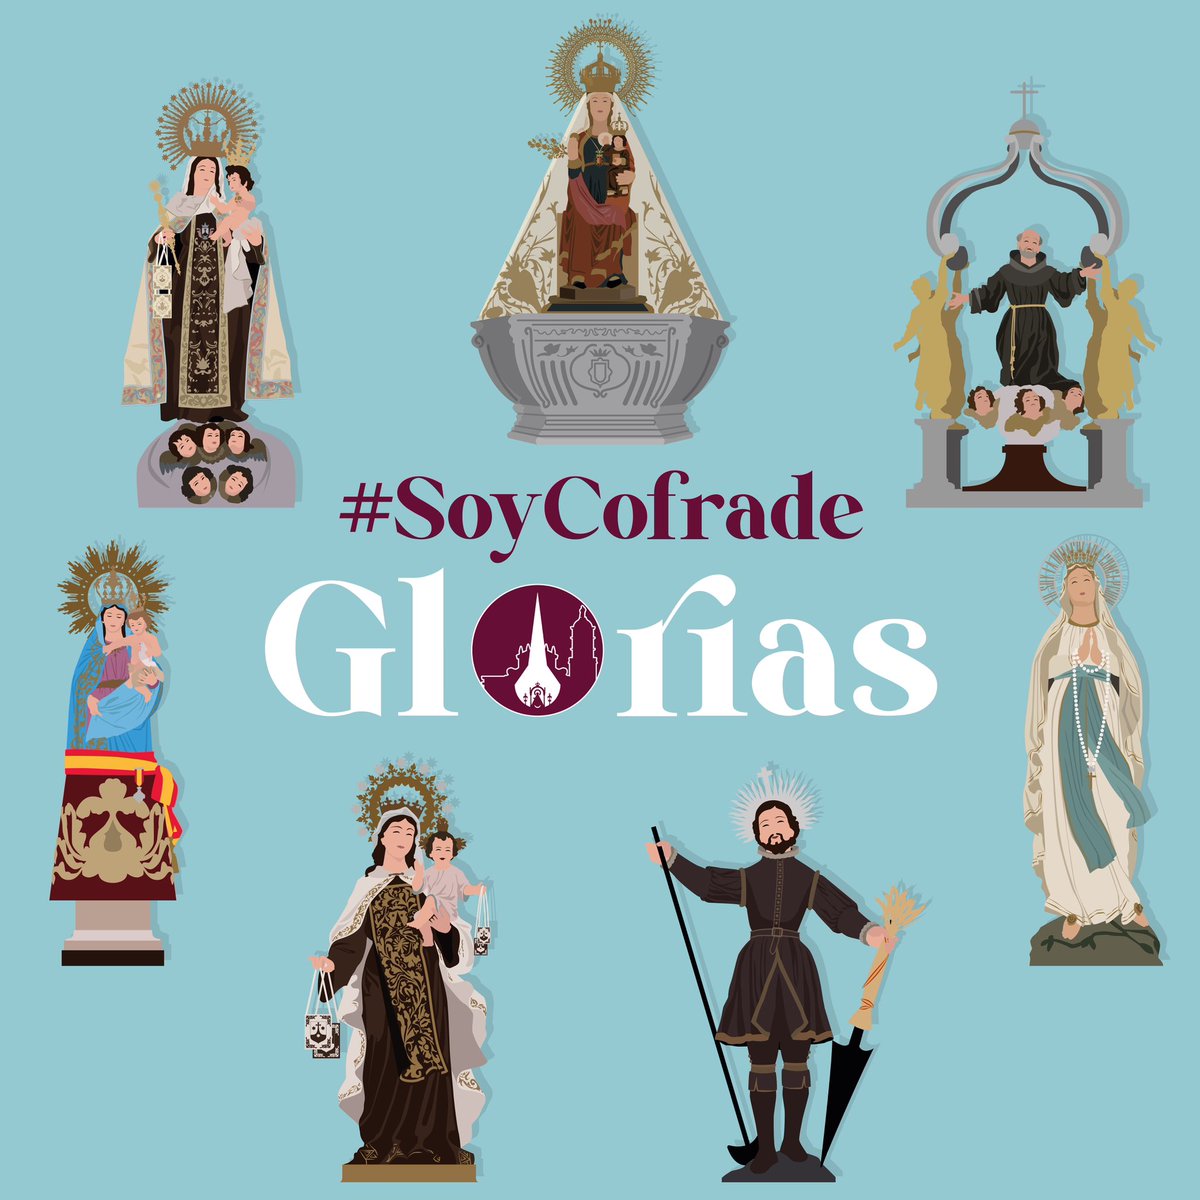 #TiempoDeGlorias | Las cofradías de Gloria mantienen viva la historia de Valladolid, sus tradiciones y su alegría.

¡Anímate y da el paso! #HazteCofrade

#SoyDeGlorias 🤍